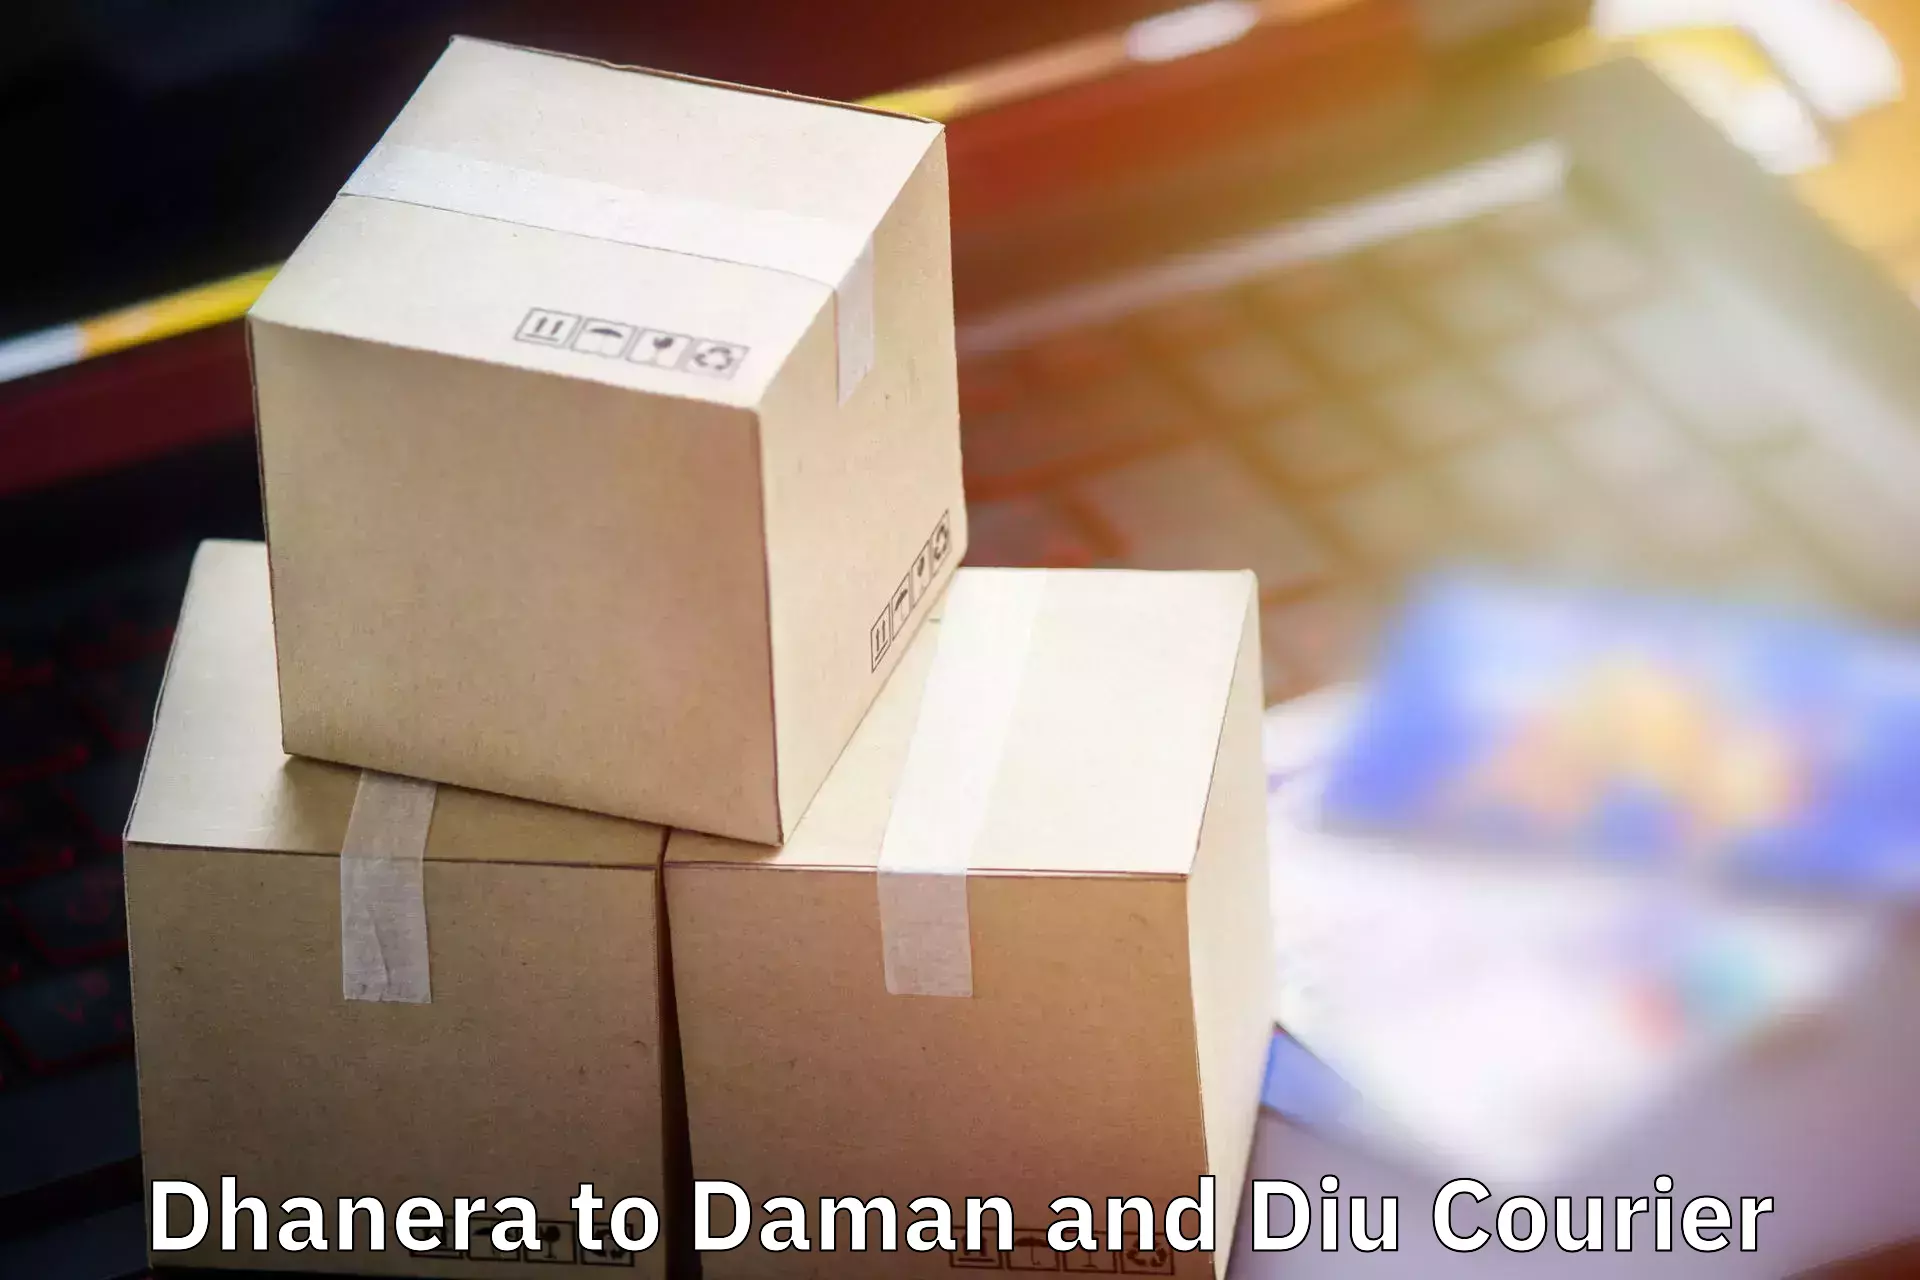 Baggage transport management Dhanera to Daman